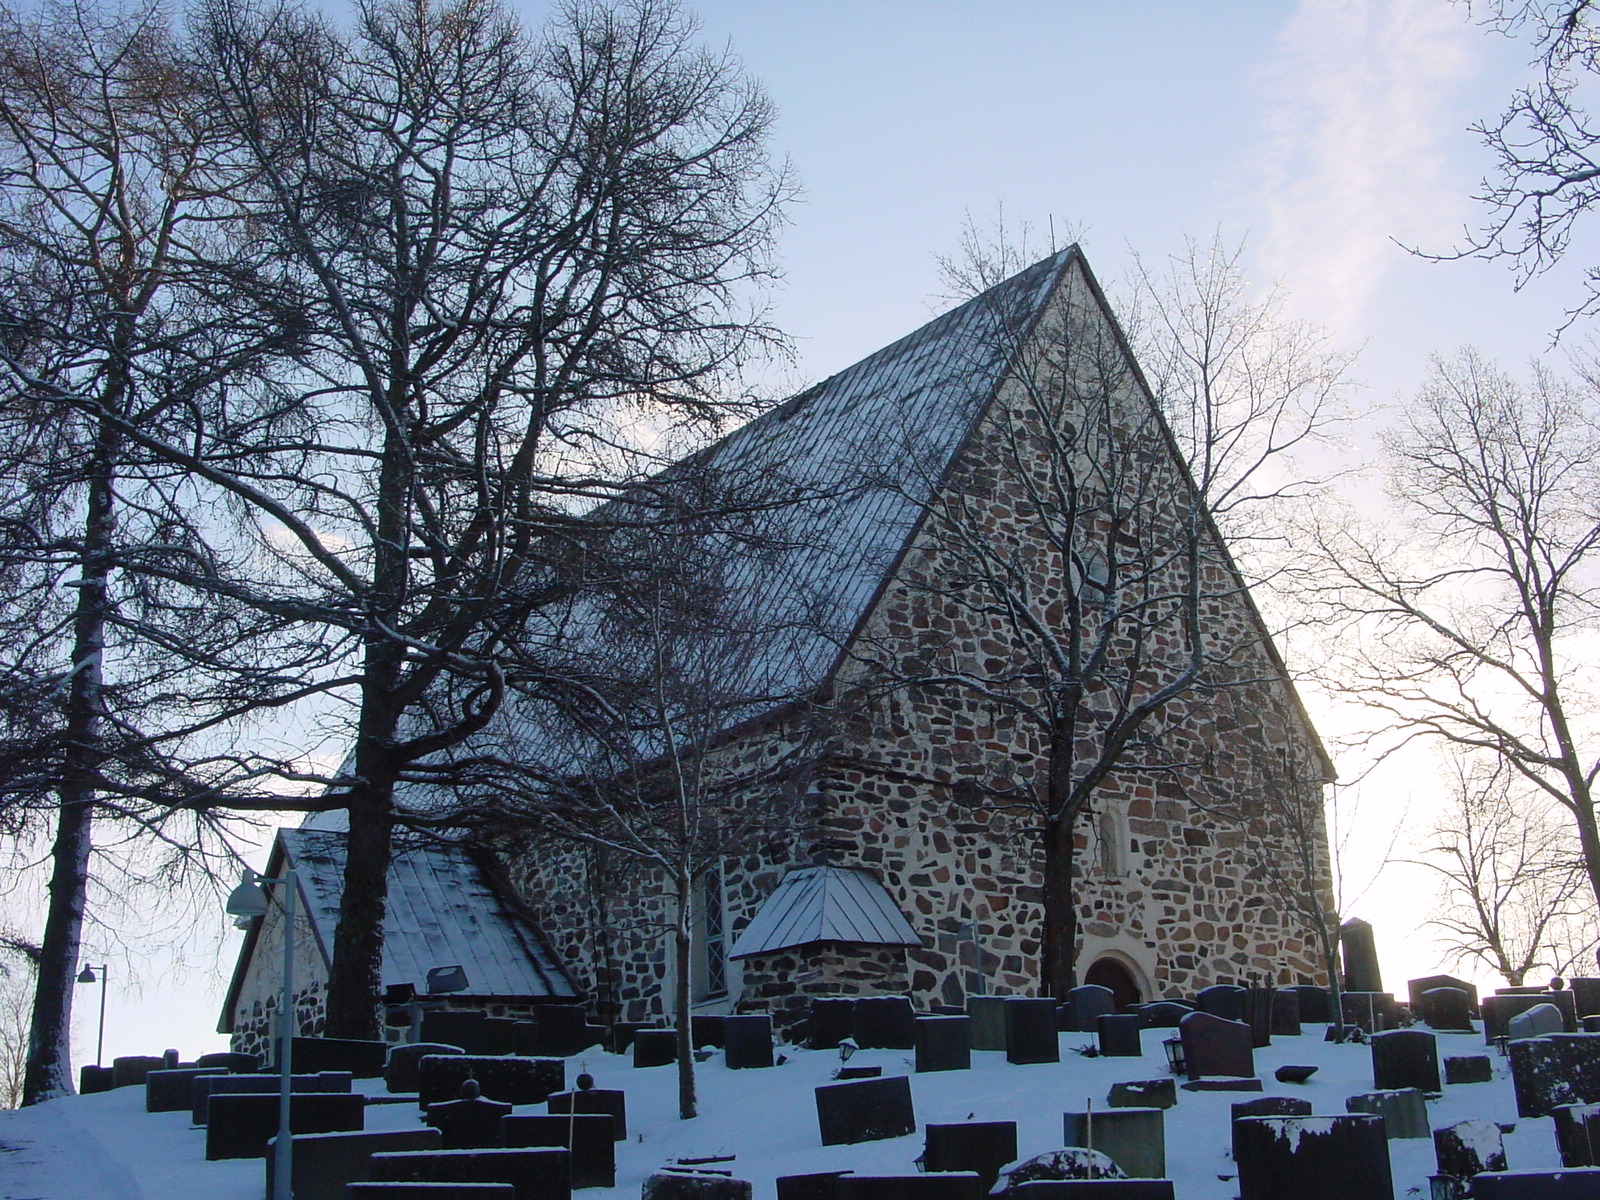 Luonnonkivistä muurattu kirkko, jossa on korkea harjakatto. Edustalla on paljon hautoja. Ympärillä on lunta.